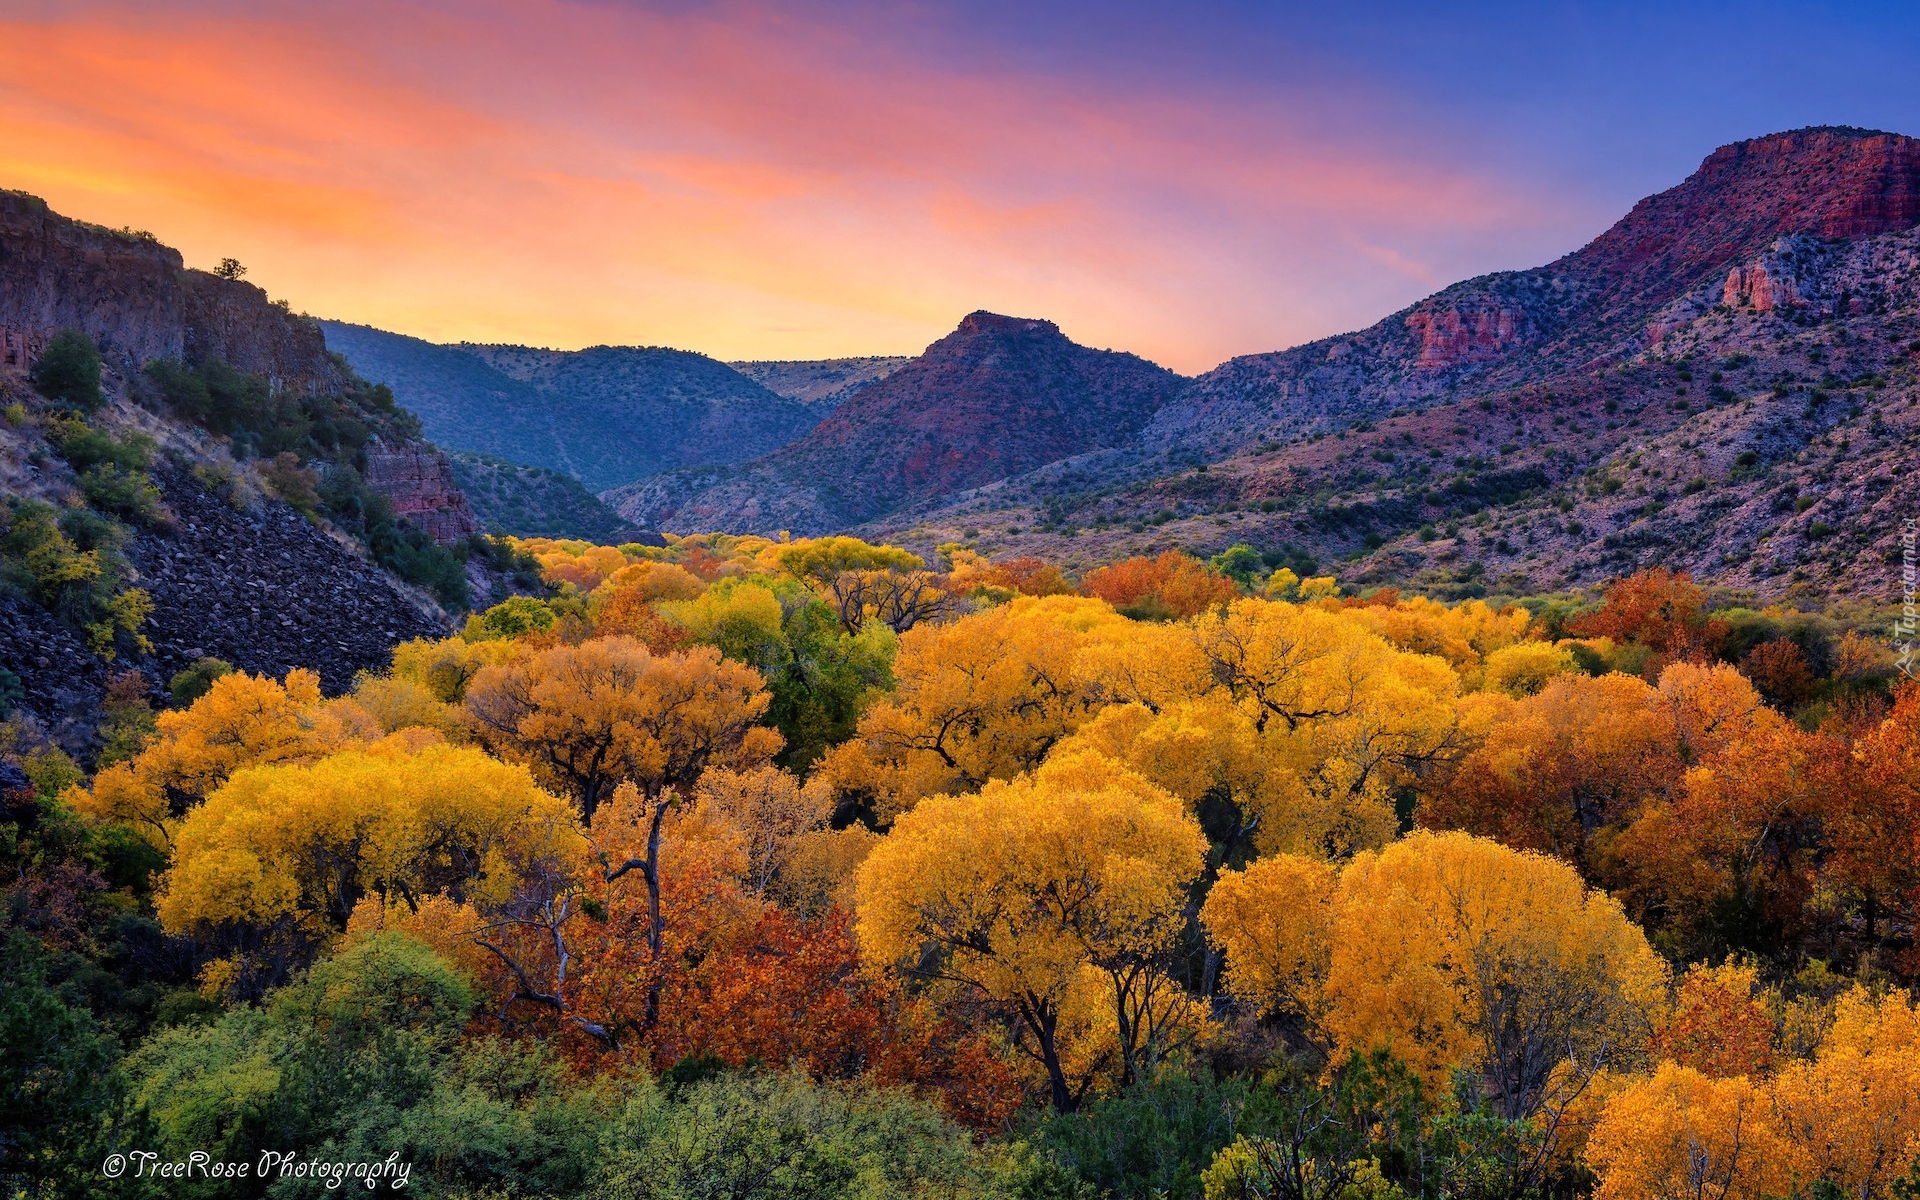 Jesień, Drzewa, Góry, Kanion Sycamore, Arizona, Stany Zjednoczone